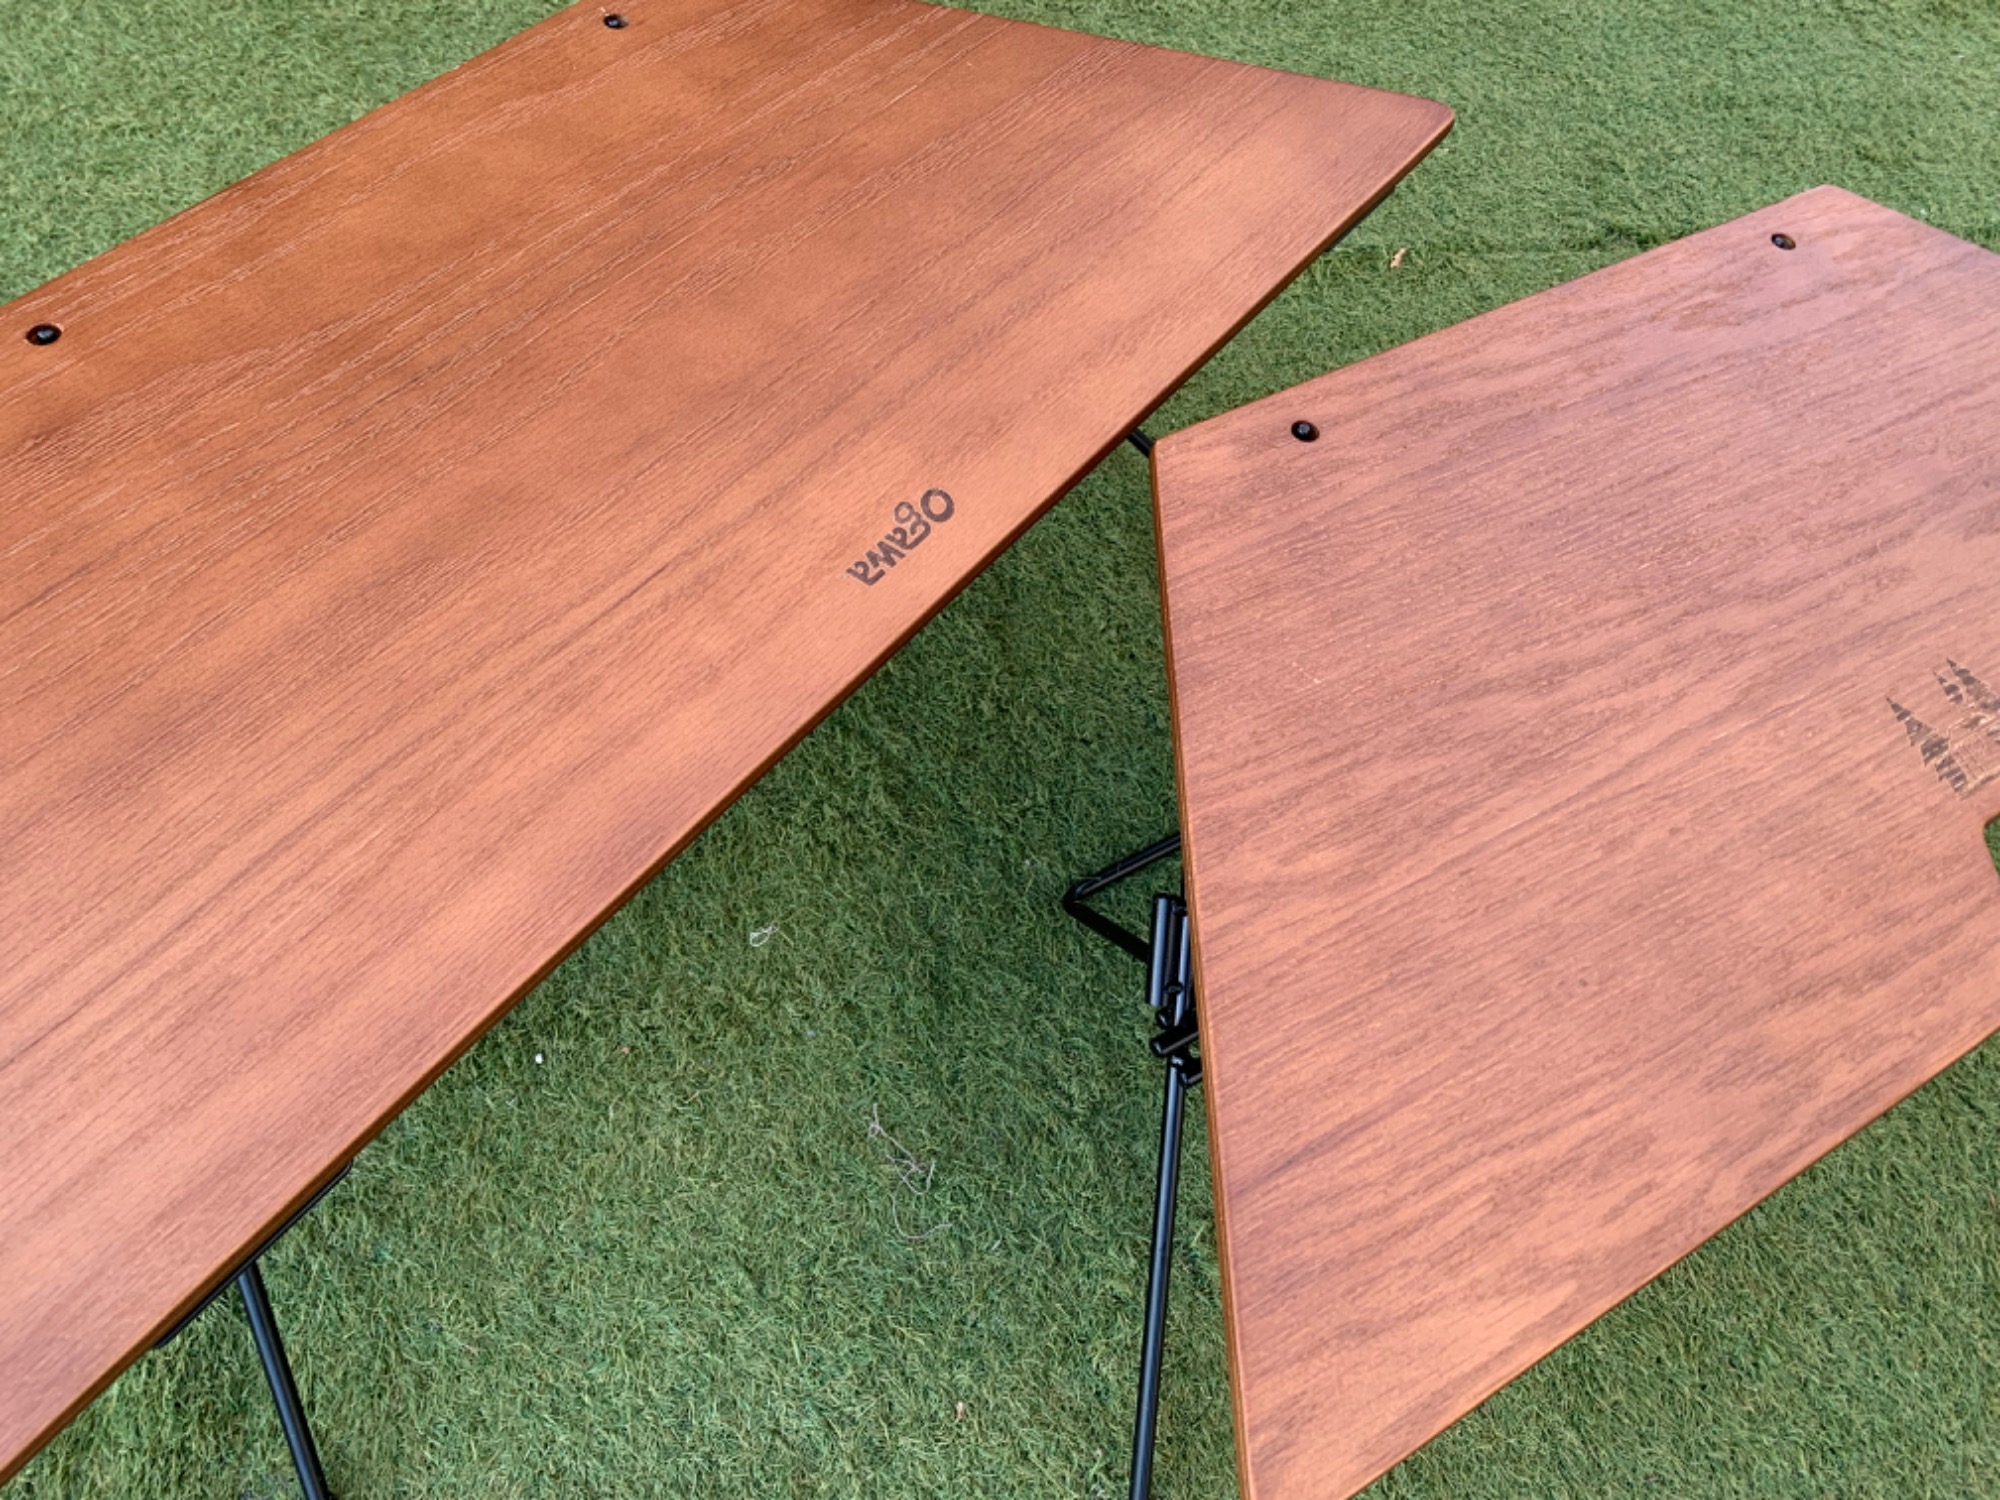 変形可能なテーブル！オガワのアーチテーブルはワンポールテントに最適 